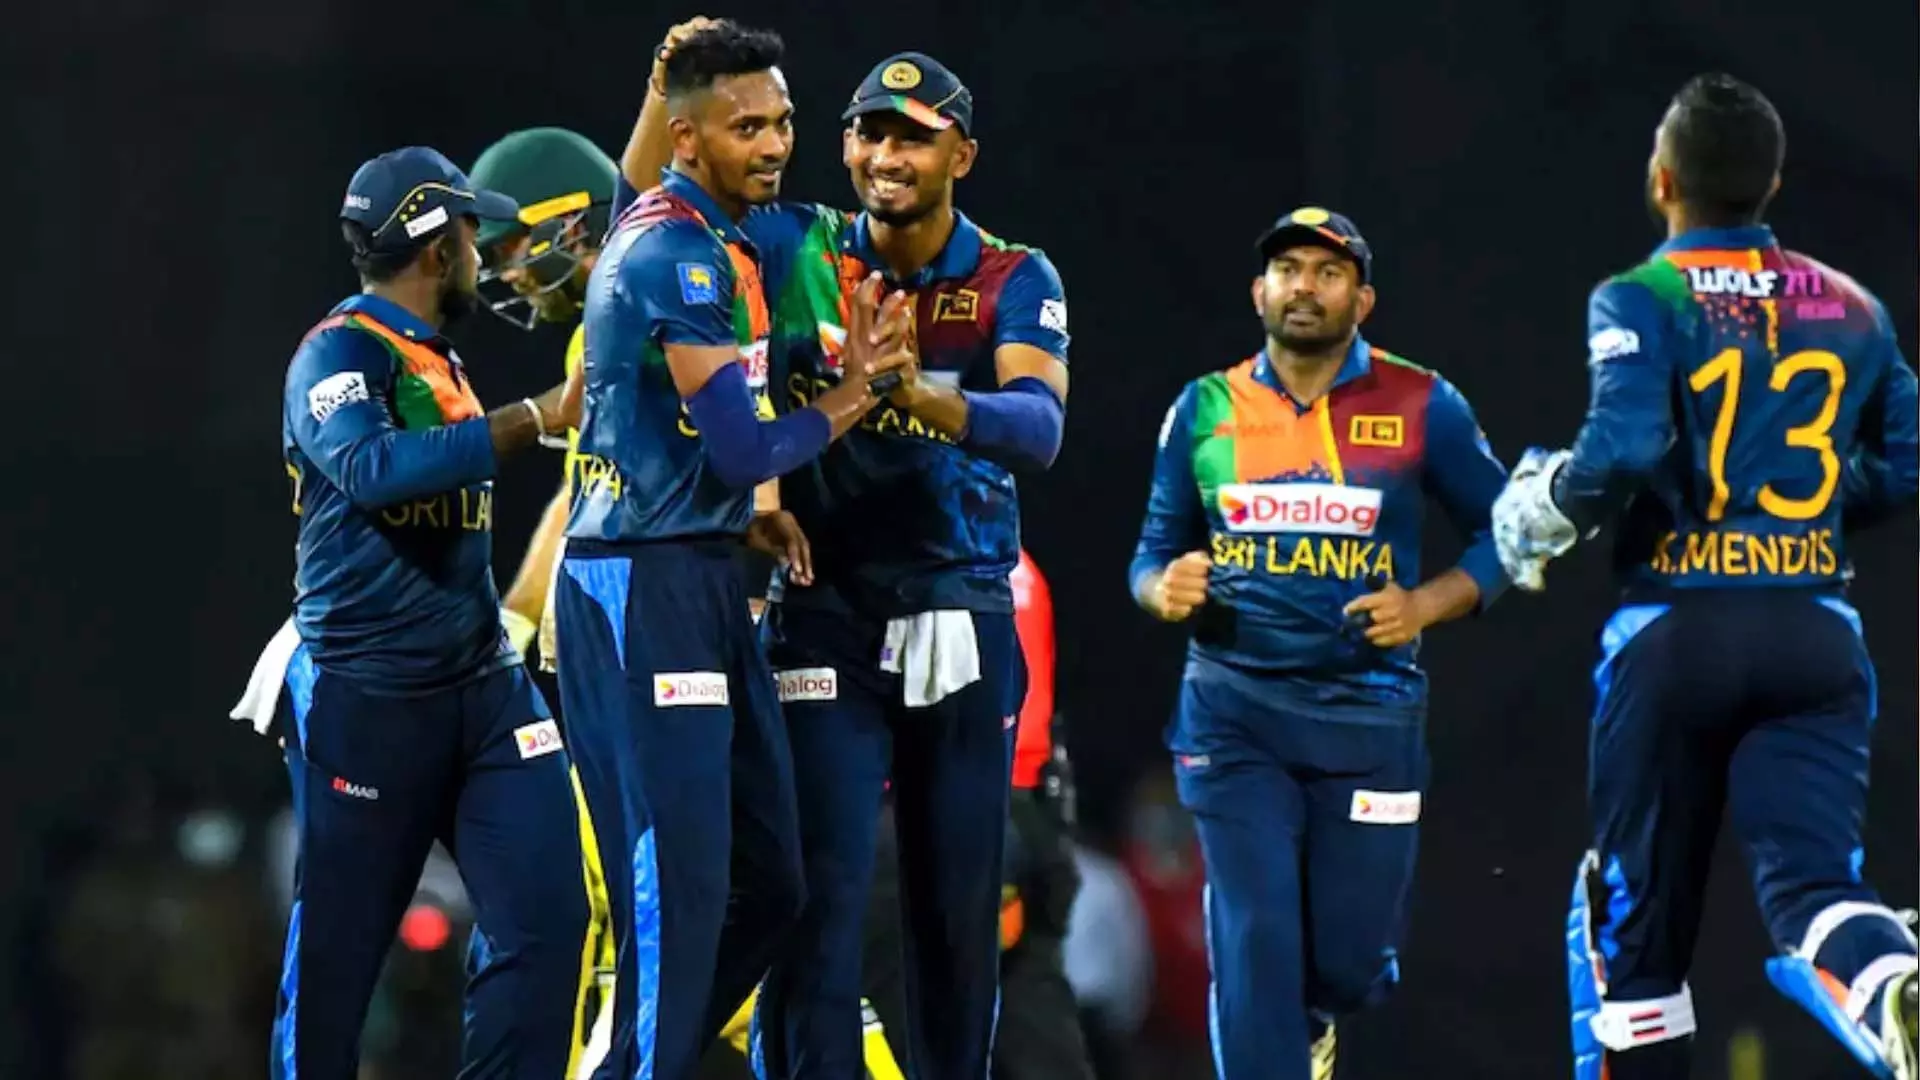 SriLanka ने एकदिवसीय श्रृंखला के लिए 16 सदस्यीय टीम की घोषणा की